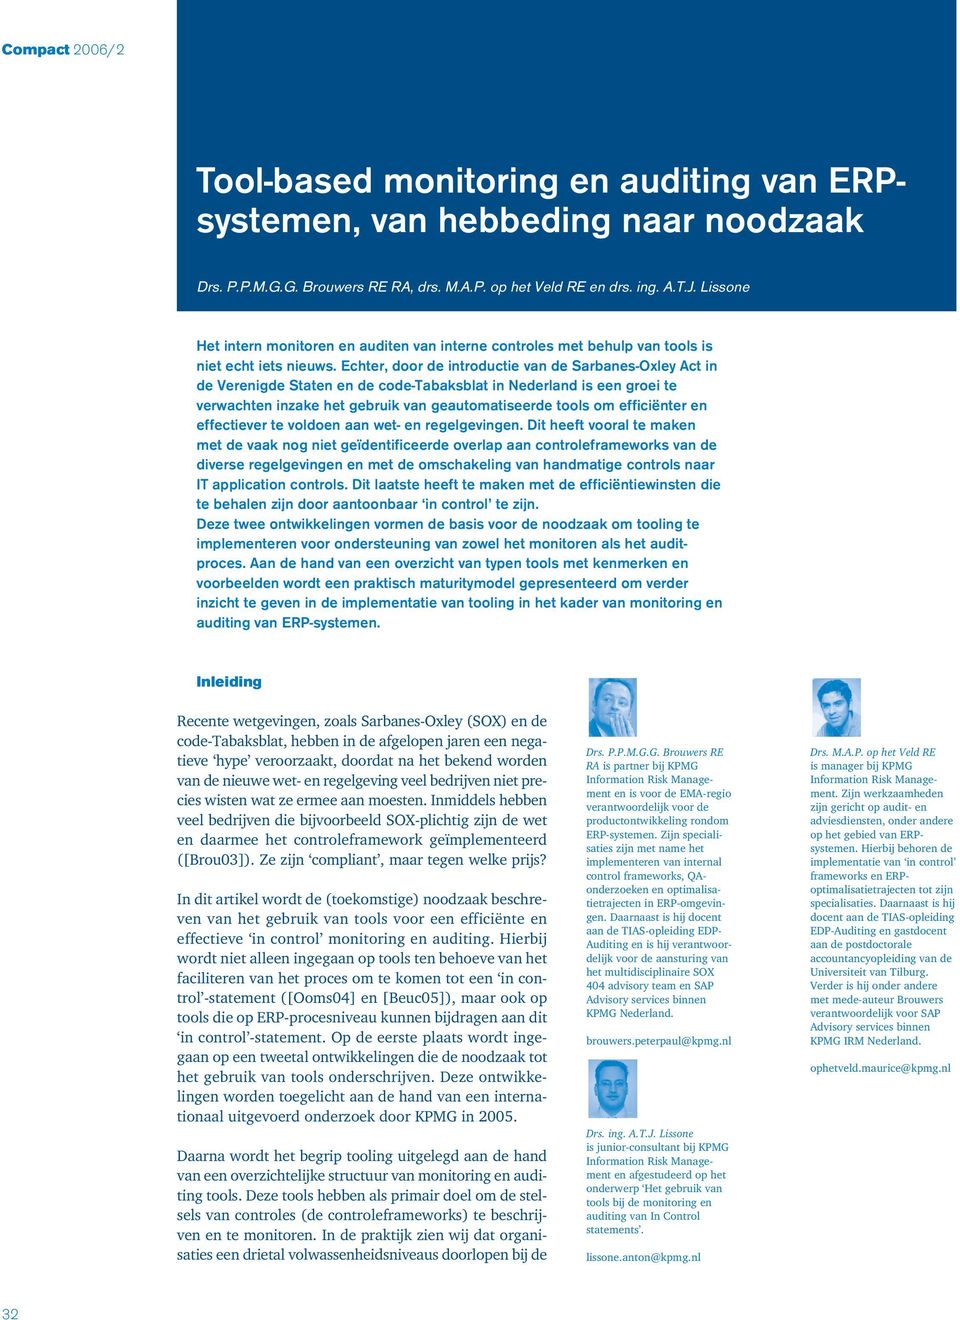 Echter, door de introductie van de Sarbanes-Oxley Act in de Verenigde Staten en de code-tabaksblat in Nederland is een groei te verwachten inzake het gebruik van geautomatiseerde tools om efficiënter